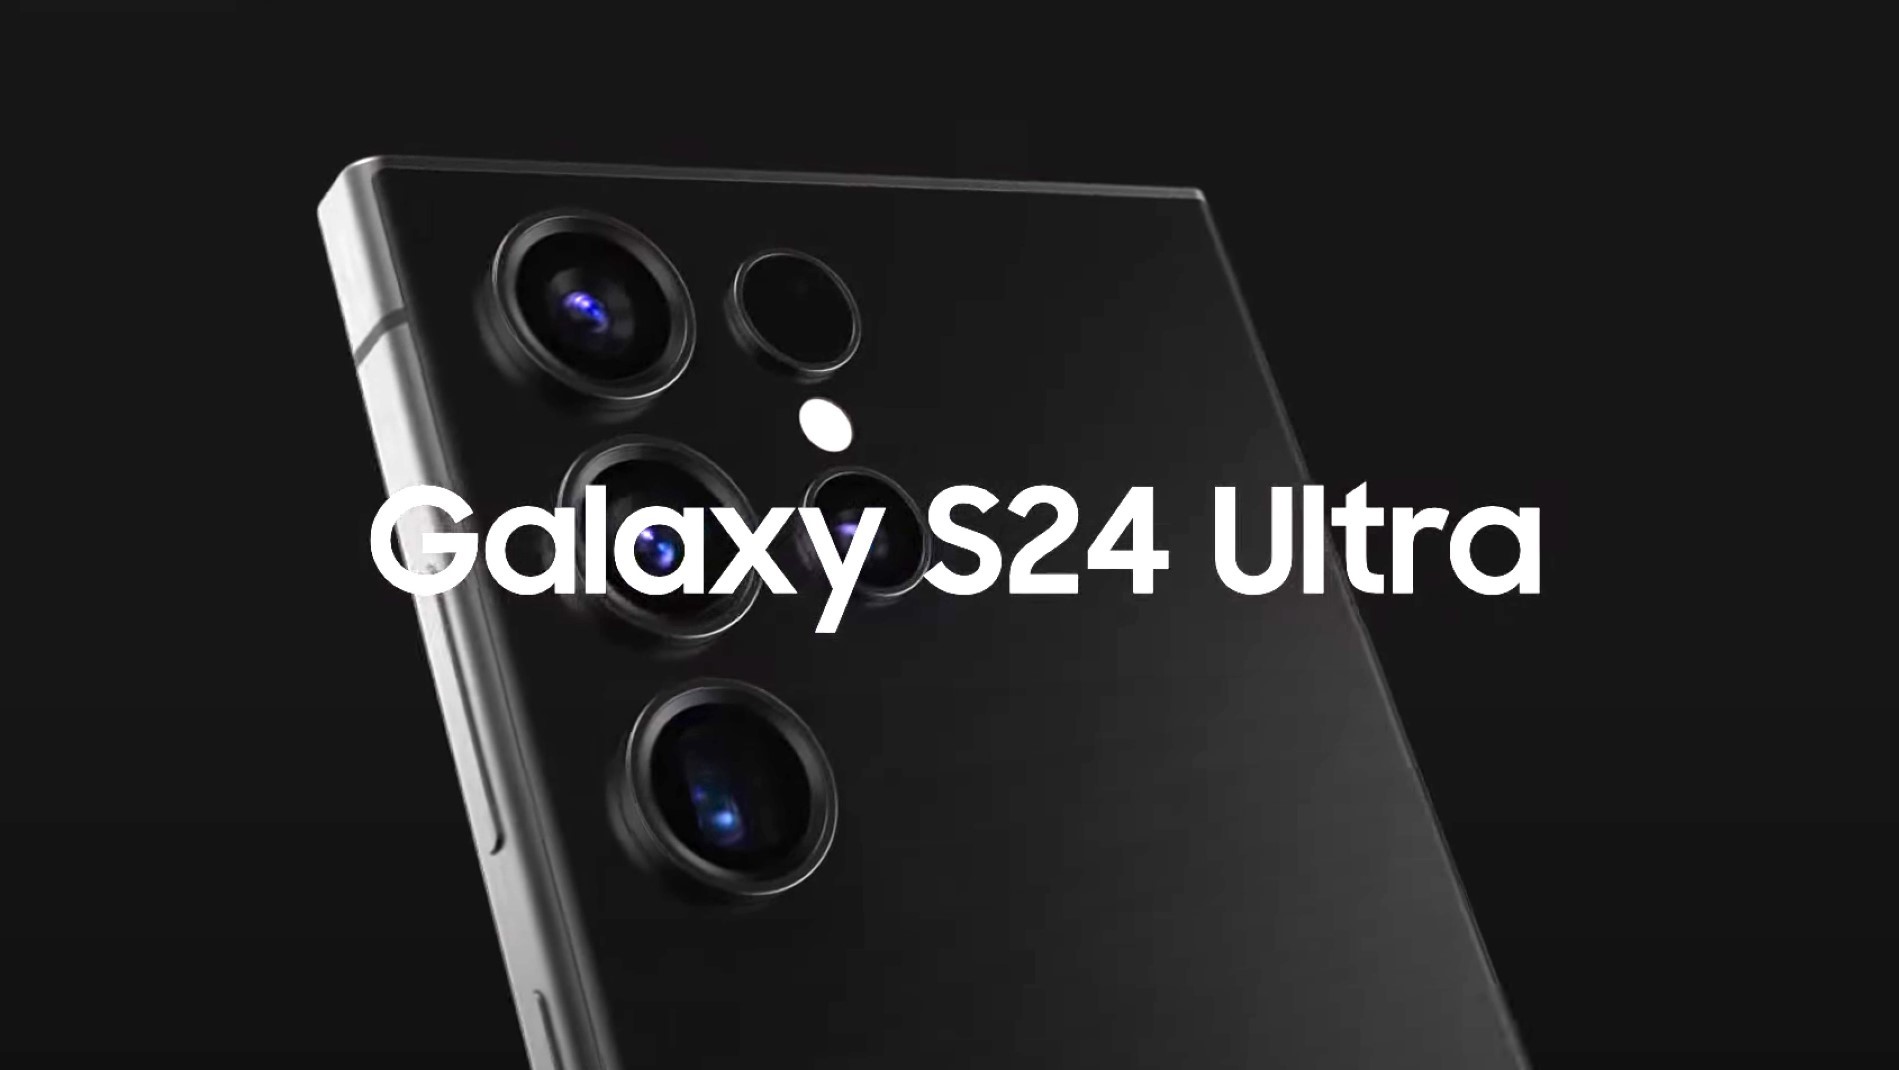 El Samsung Galaxy S24 Ultra será mucho más potente en juegos que